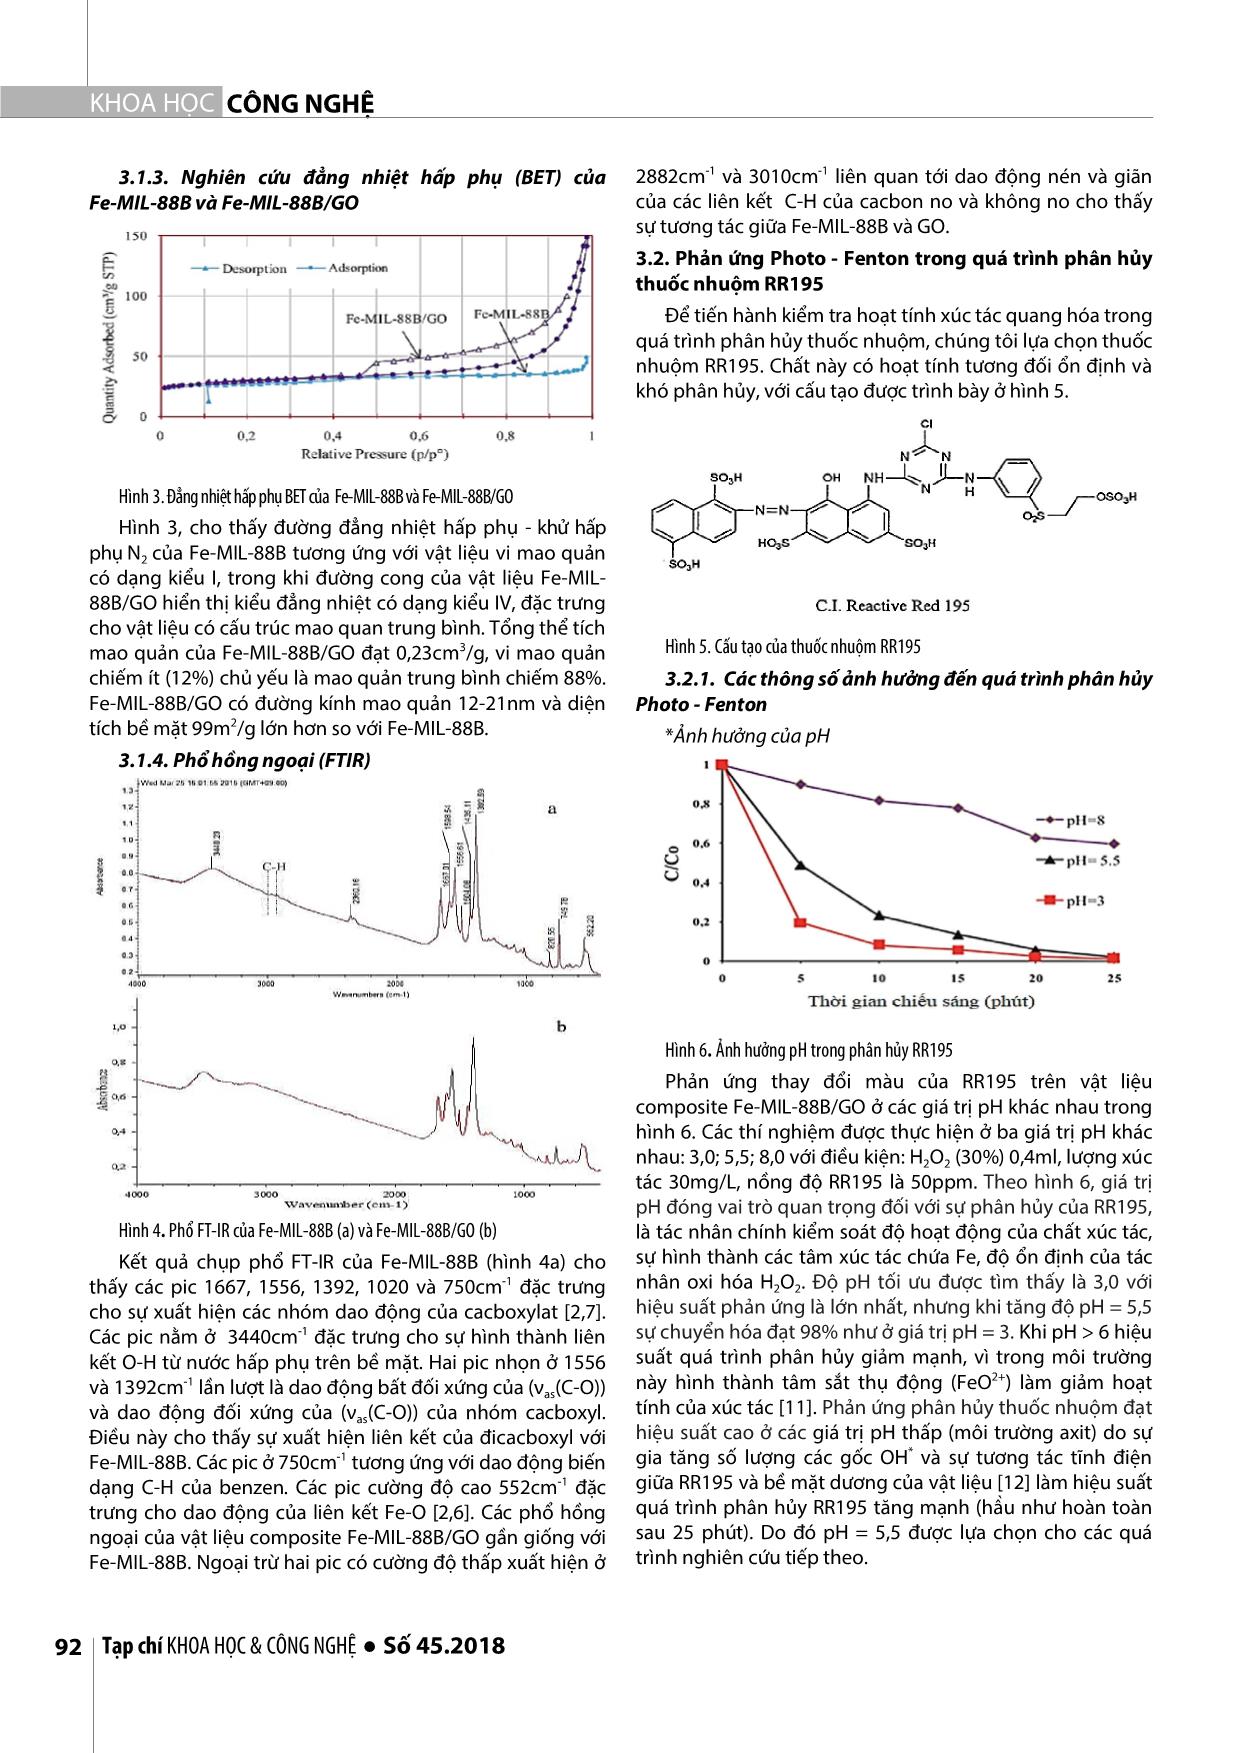 Nghiên cứu tổng hợp vật liệu nano compozit mới Fe-Mil-88b/go ứng dụng trong phân hủy quang xúc tác thuốc nhuộm trong môi trường nước trang 3